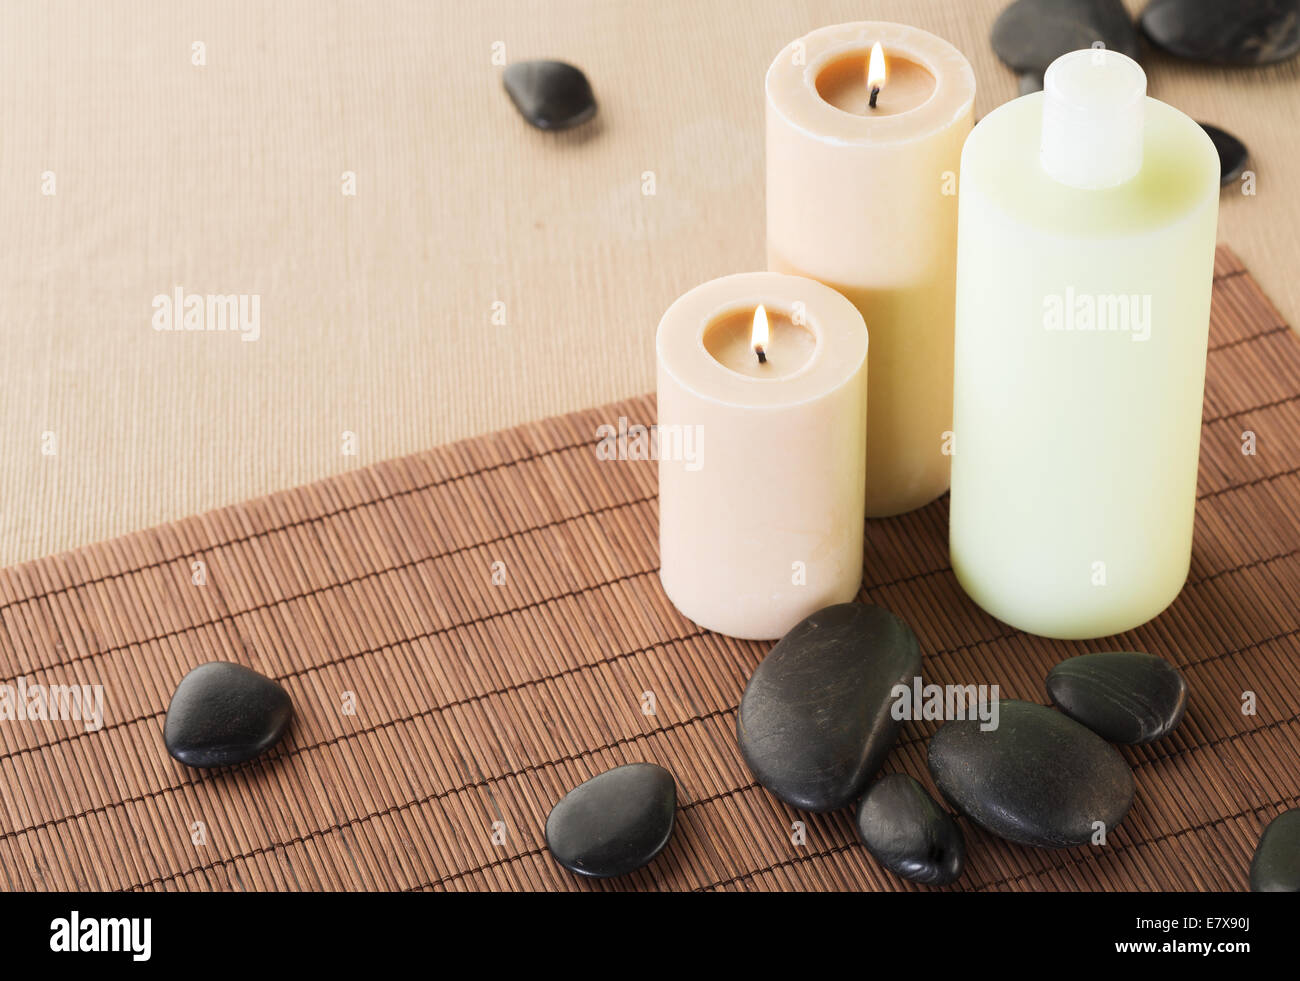 shampoo bottle, massage stones and candles Stock Photo